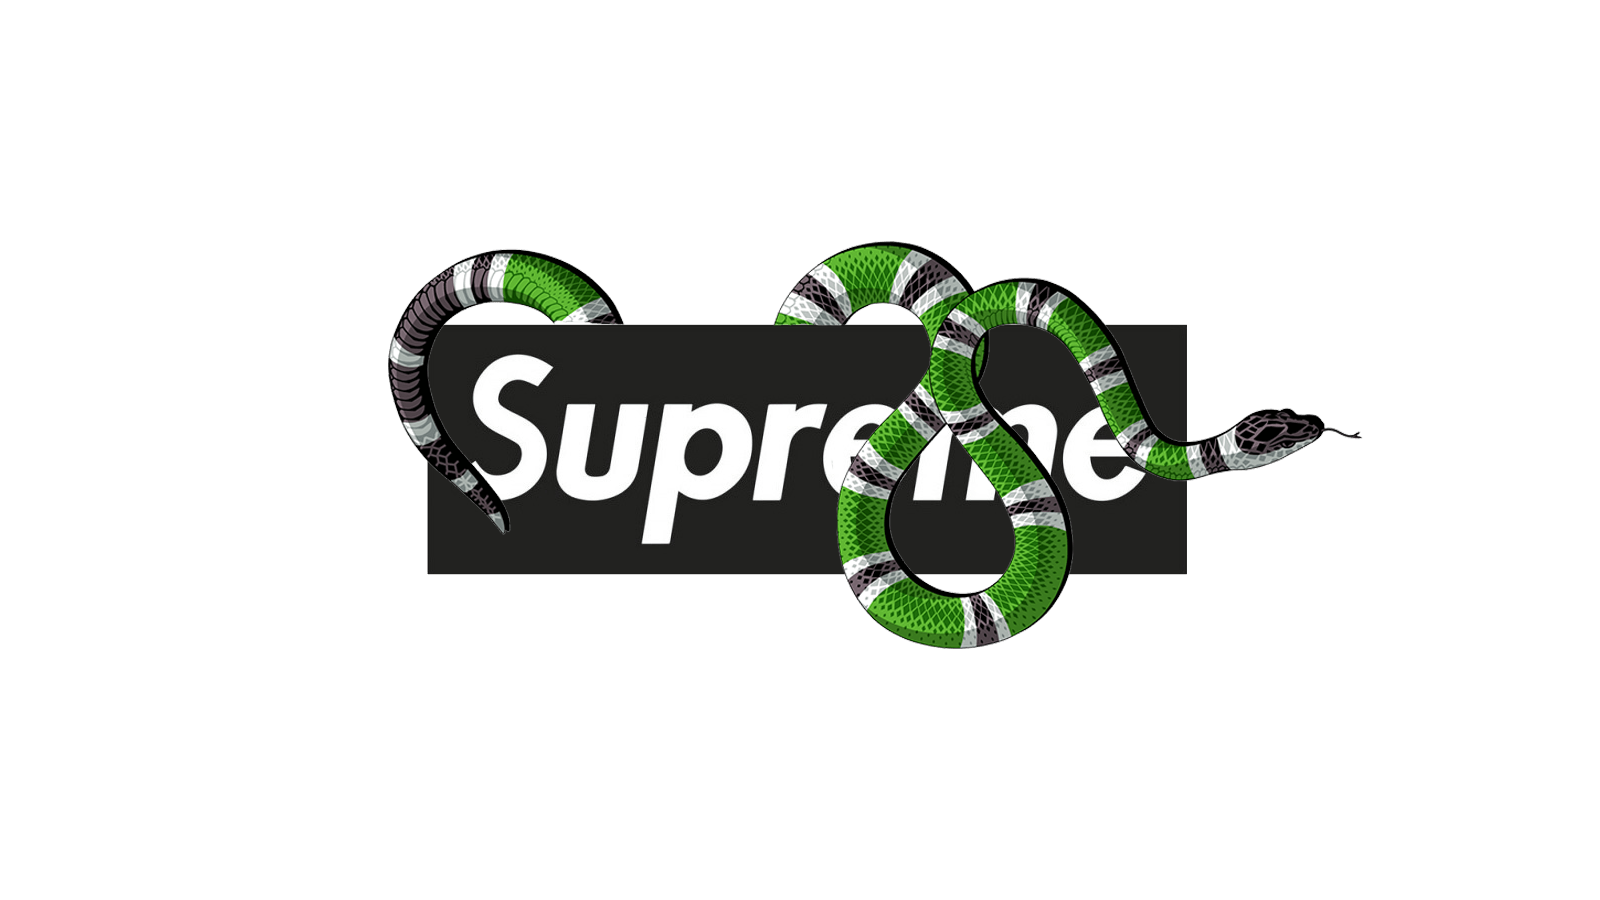 Supreme Gucci Wallpapers - WallpaperSafari